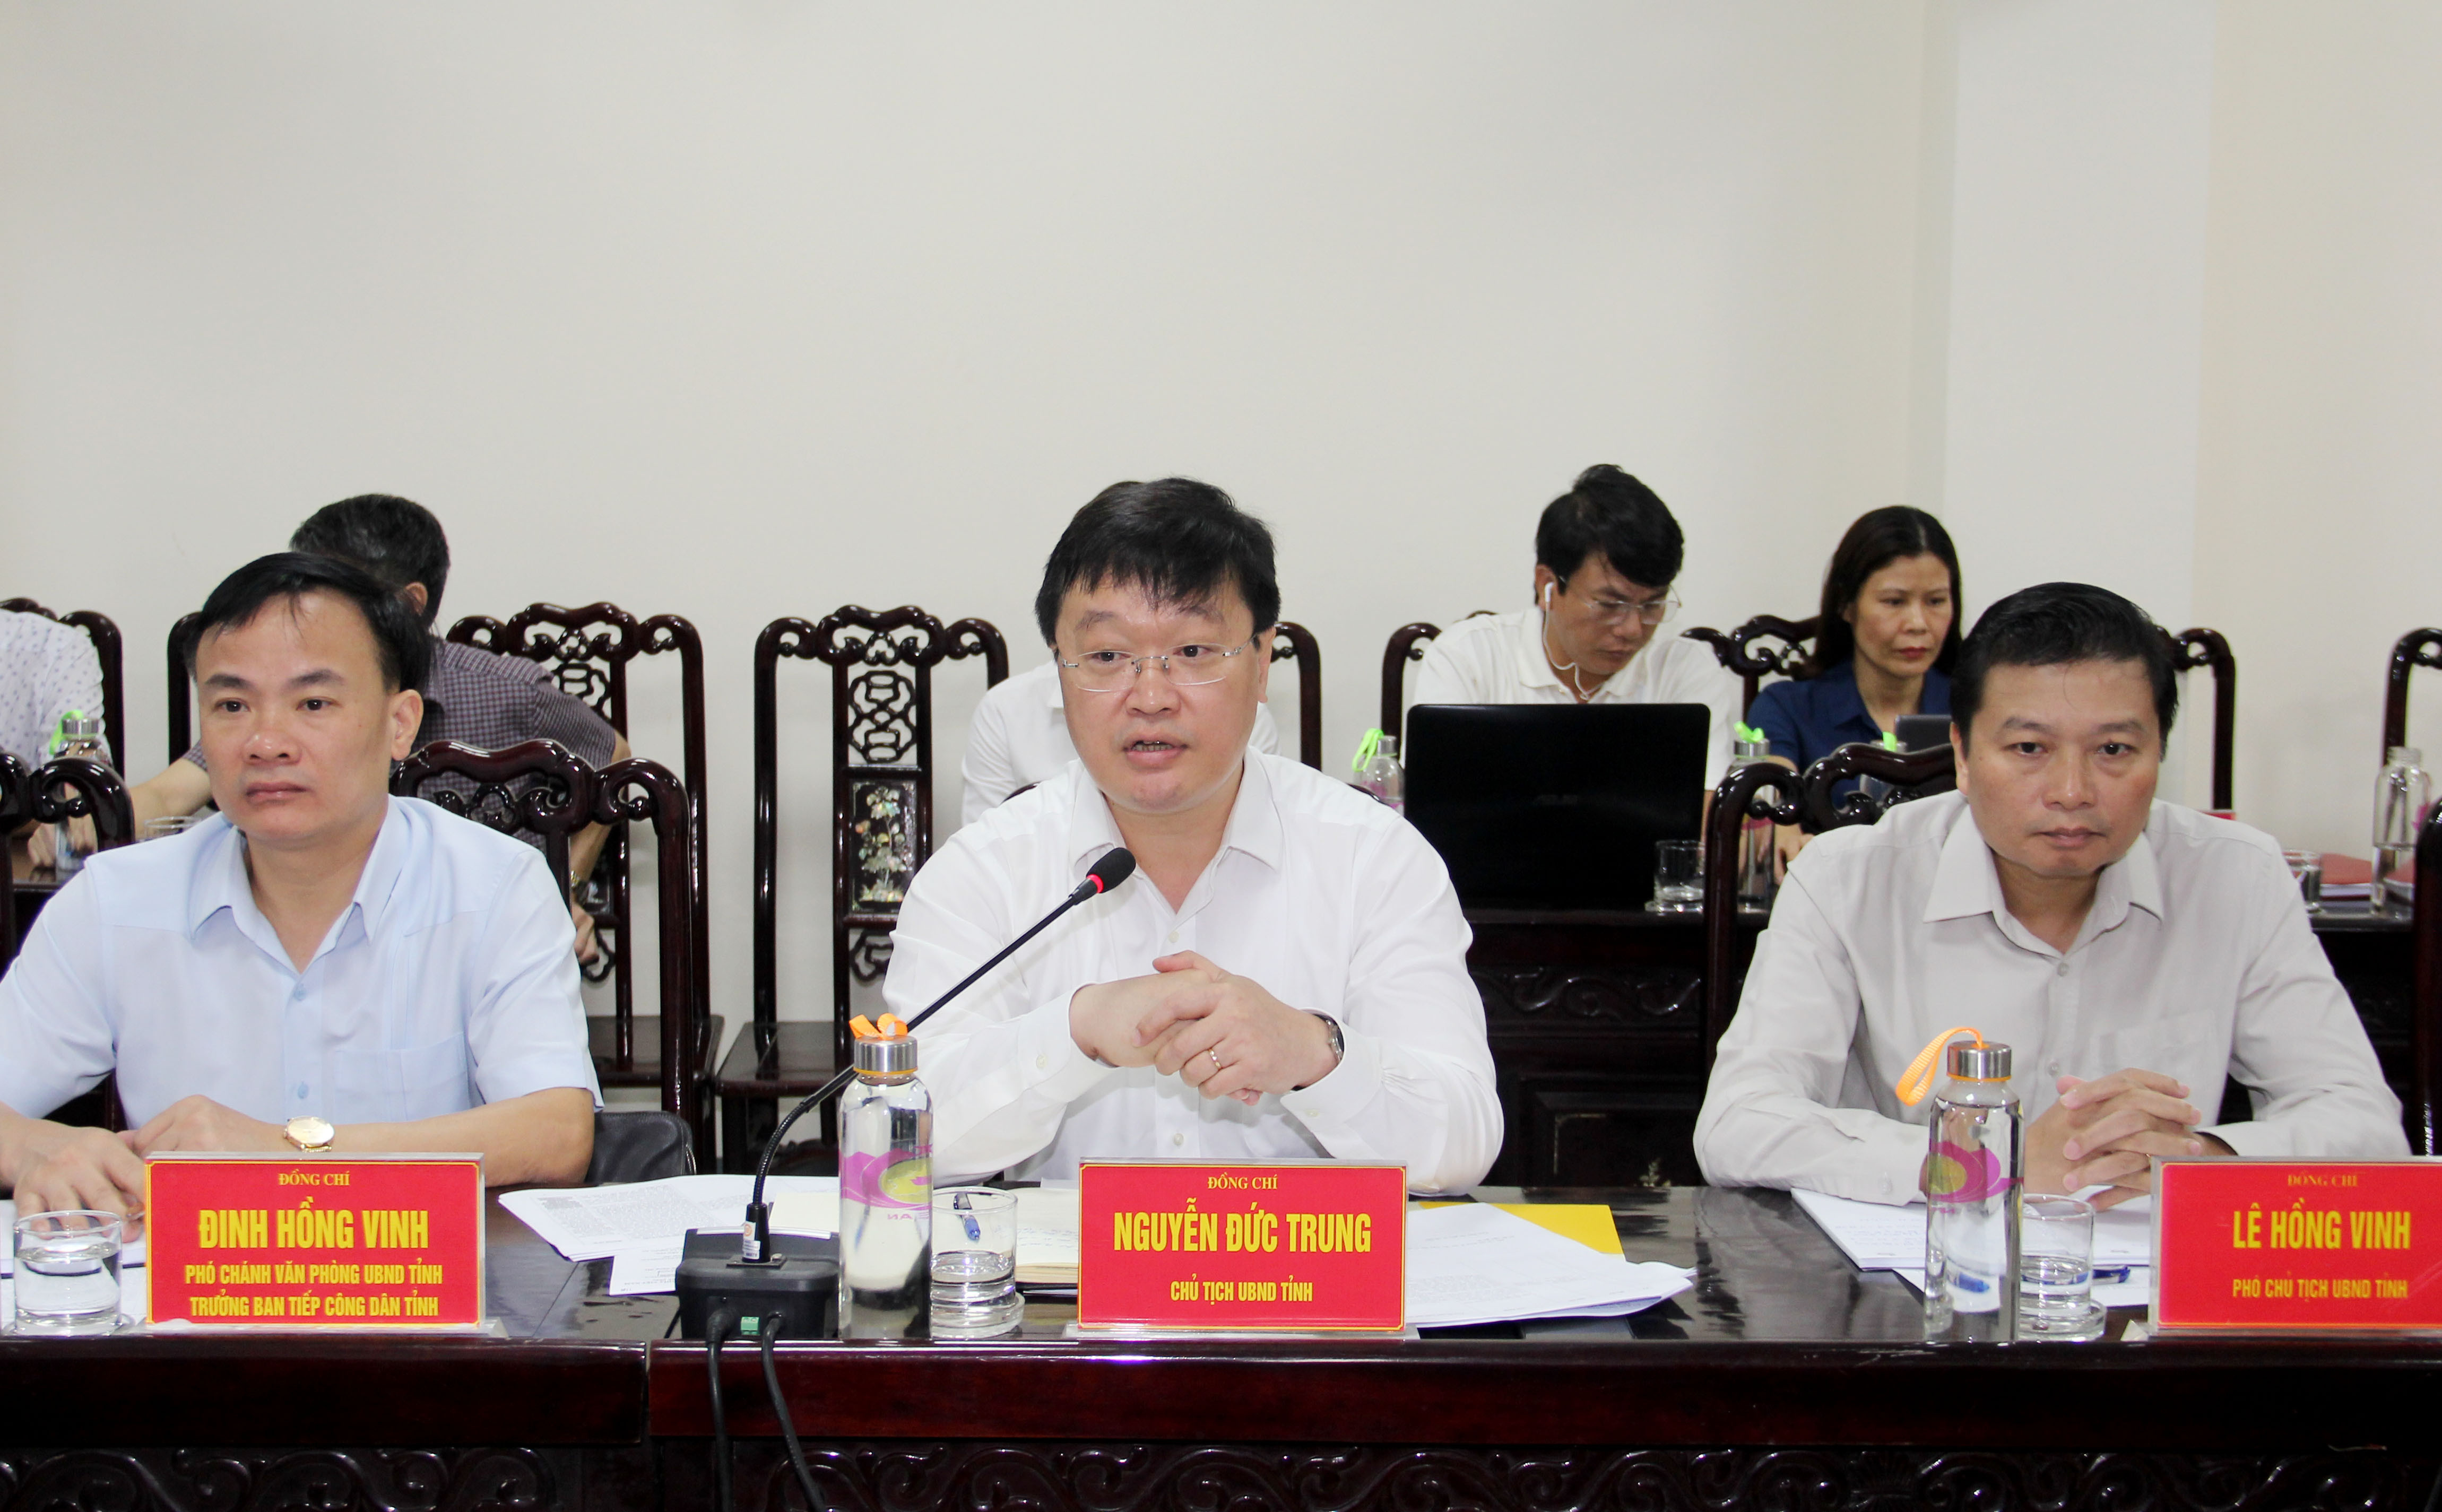 Đồng chí Nguyễn Đức Trung - Chủ tịch UBND tỉnh chỉ đạo các cấp, ngành quan tâm giải quyết các quyền lợi chính đáng cho người dân. Ảnh: Phạm Bằng